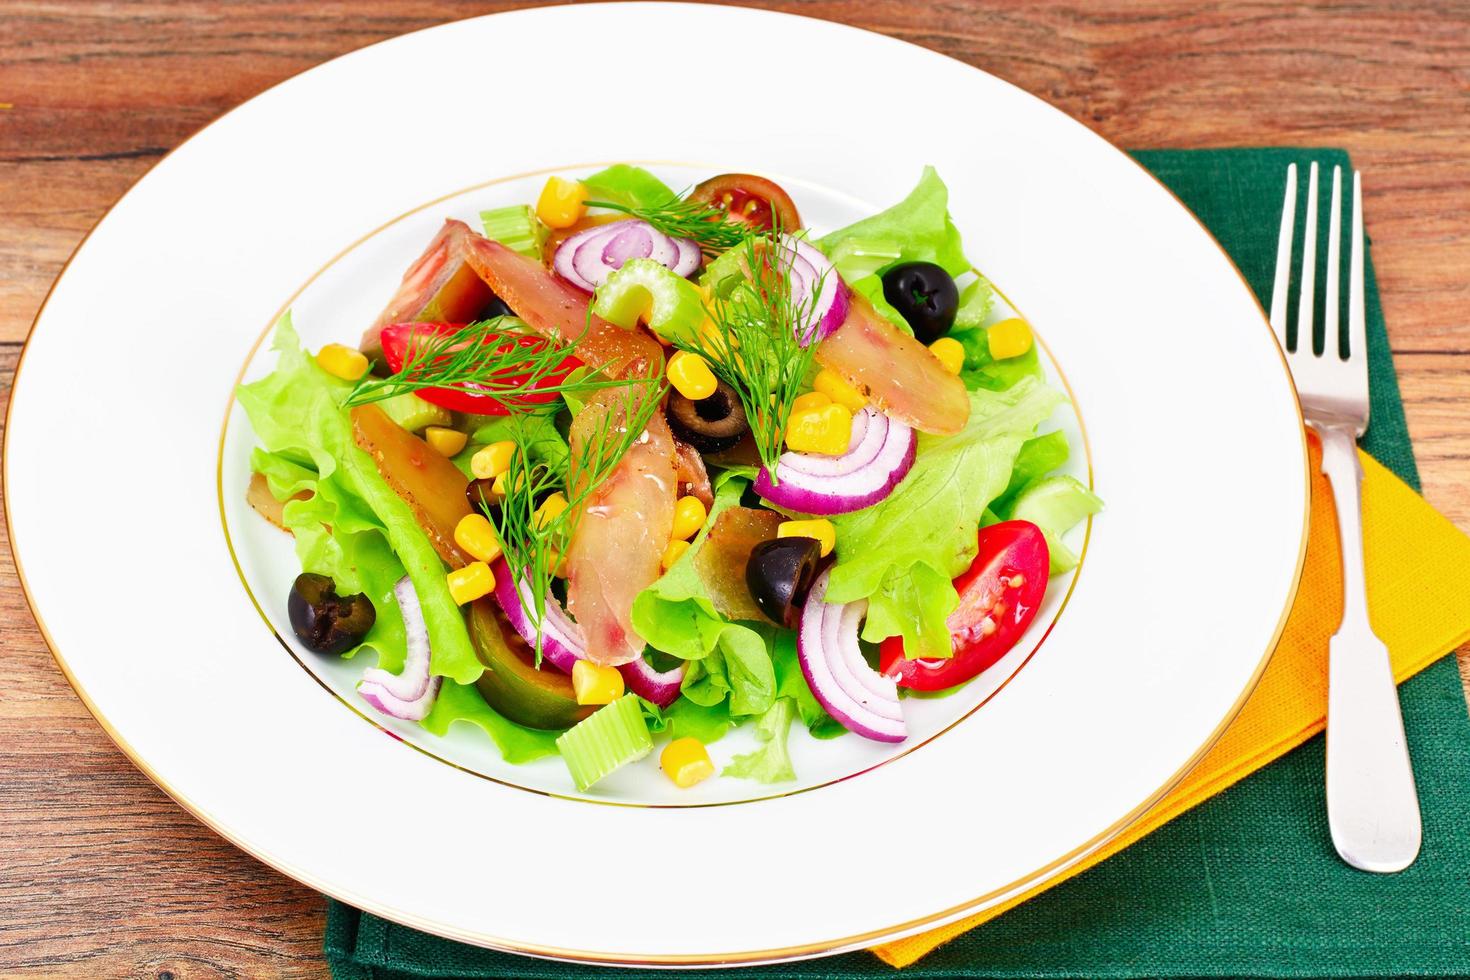 Salat mit Tomatenkumata, Trockenfleisch, Sellerie und Oliven foto